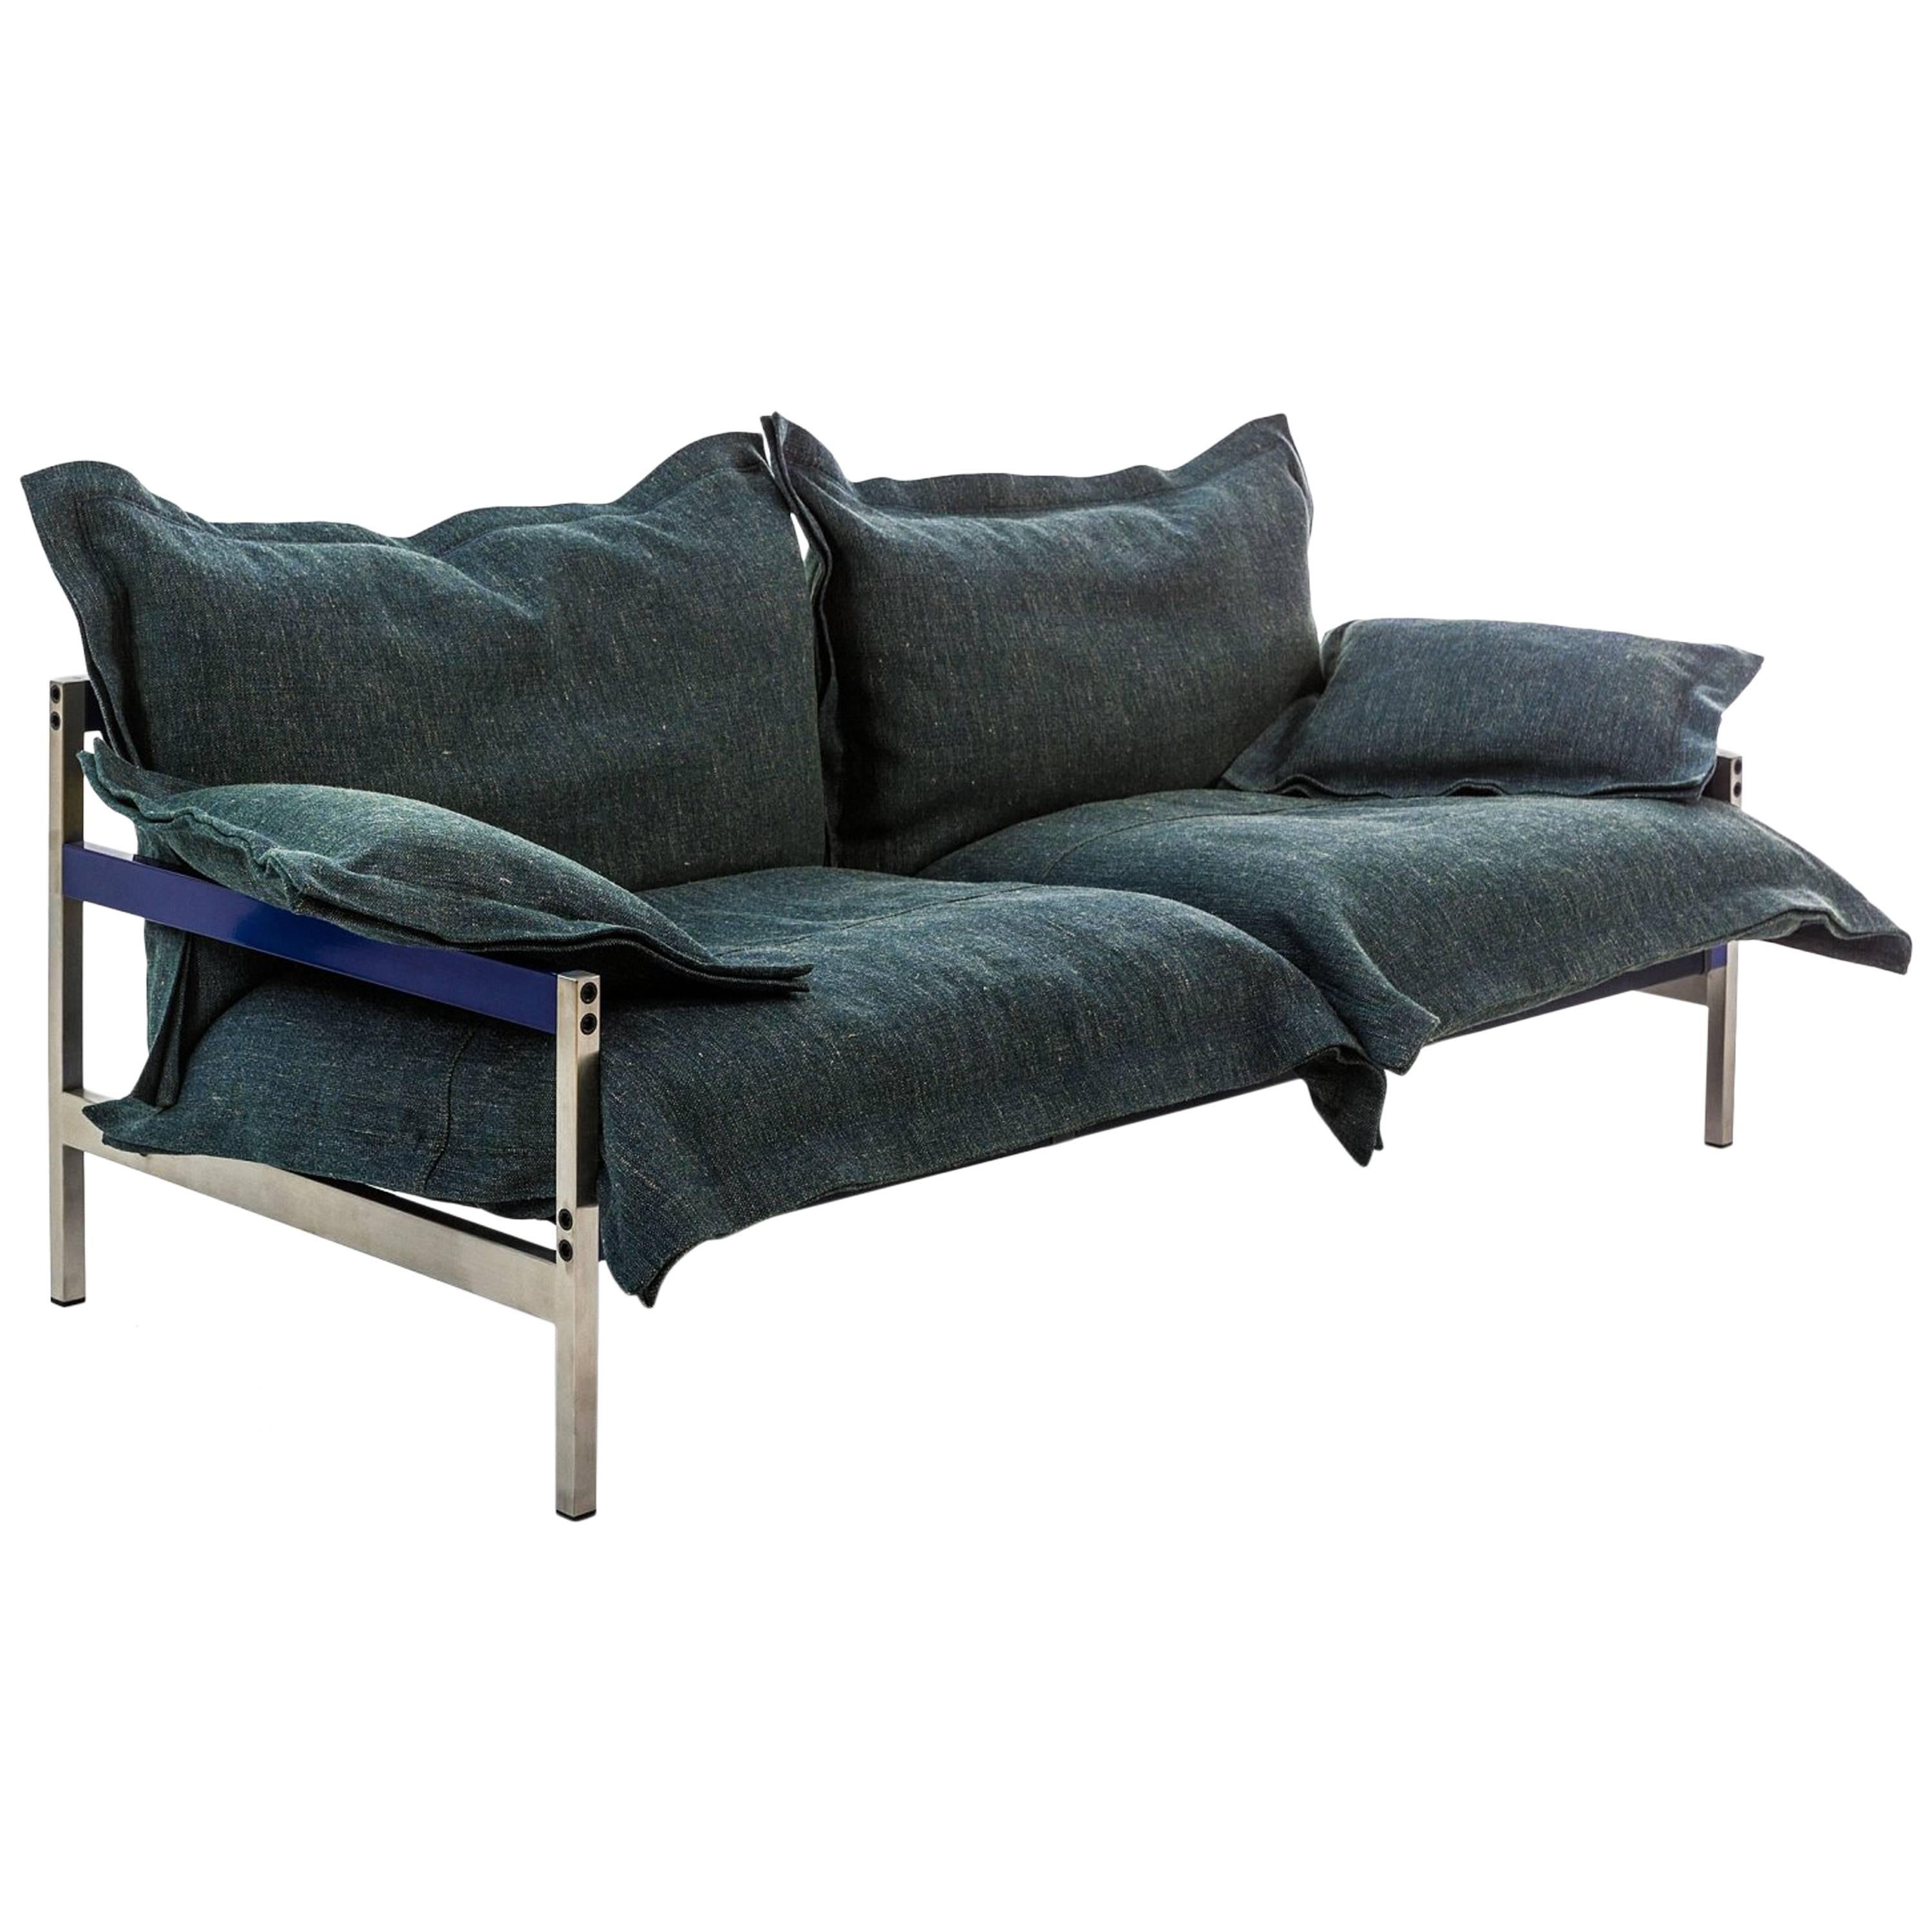 Dreisitziges gepolstertes Sofa „Iron Maiden“ mit Stahlrahmen von Moroso für Diesel